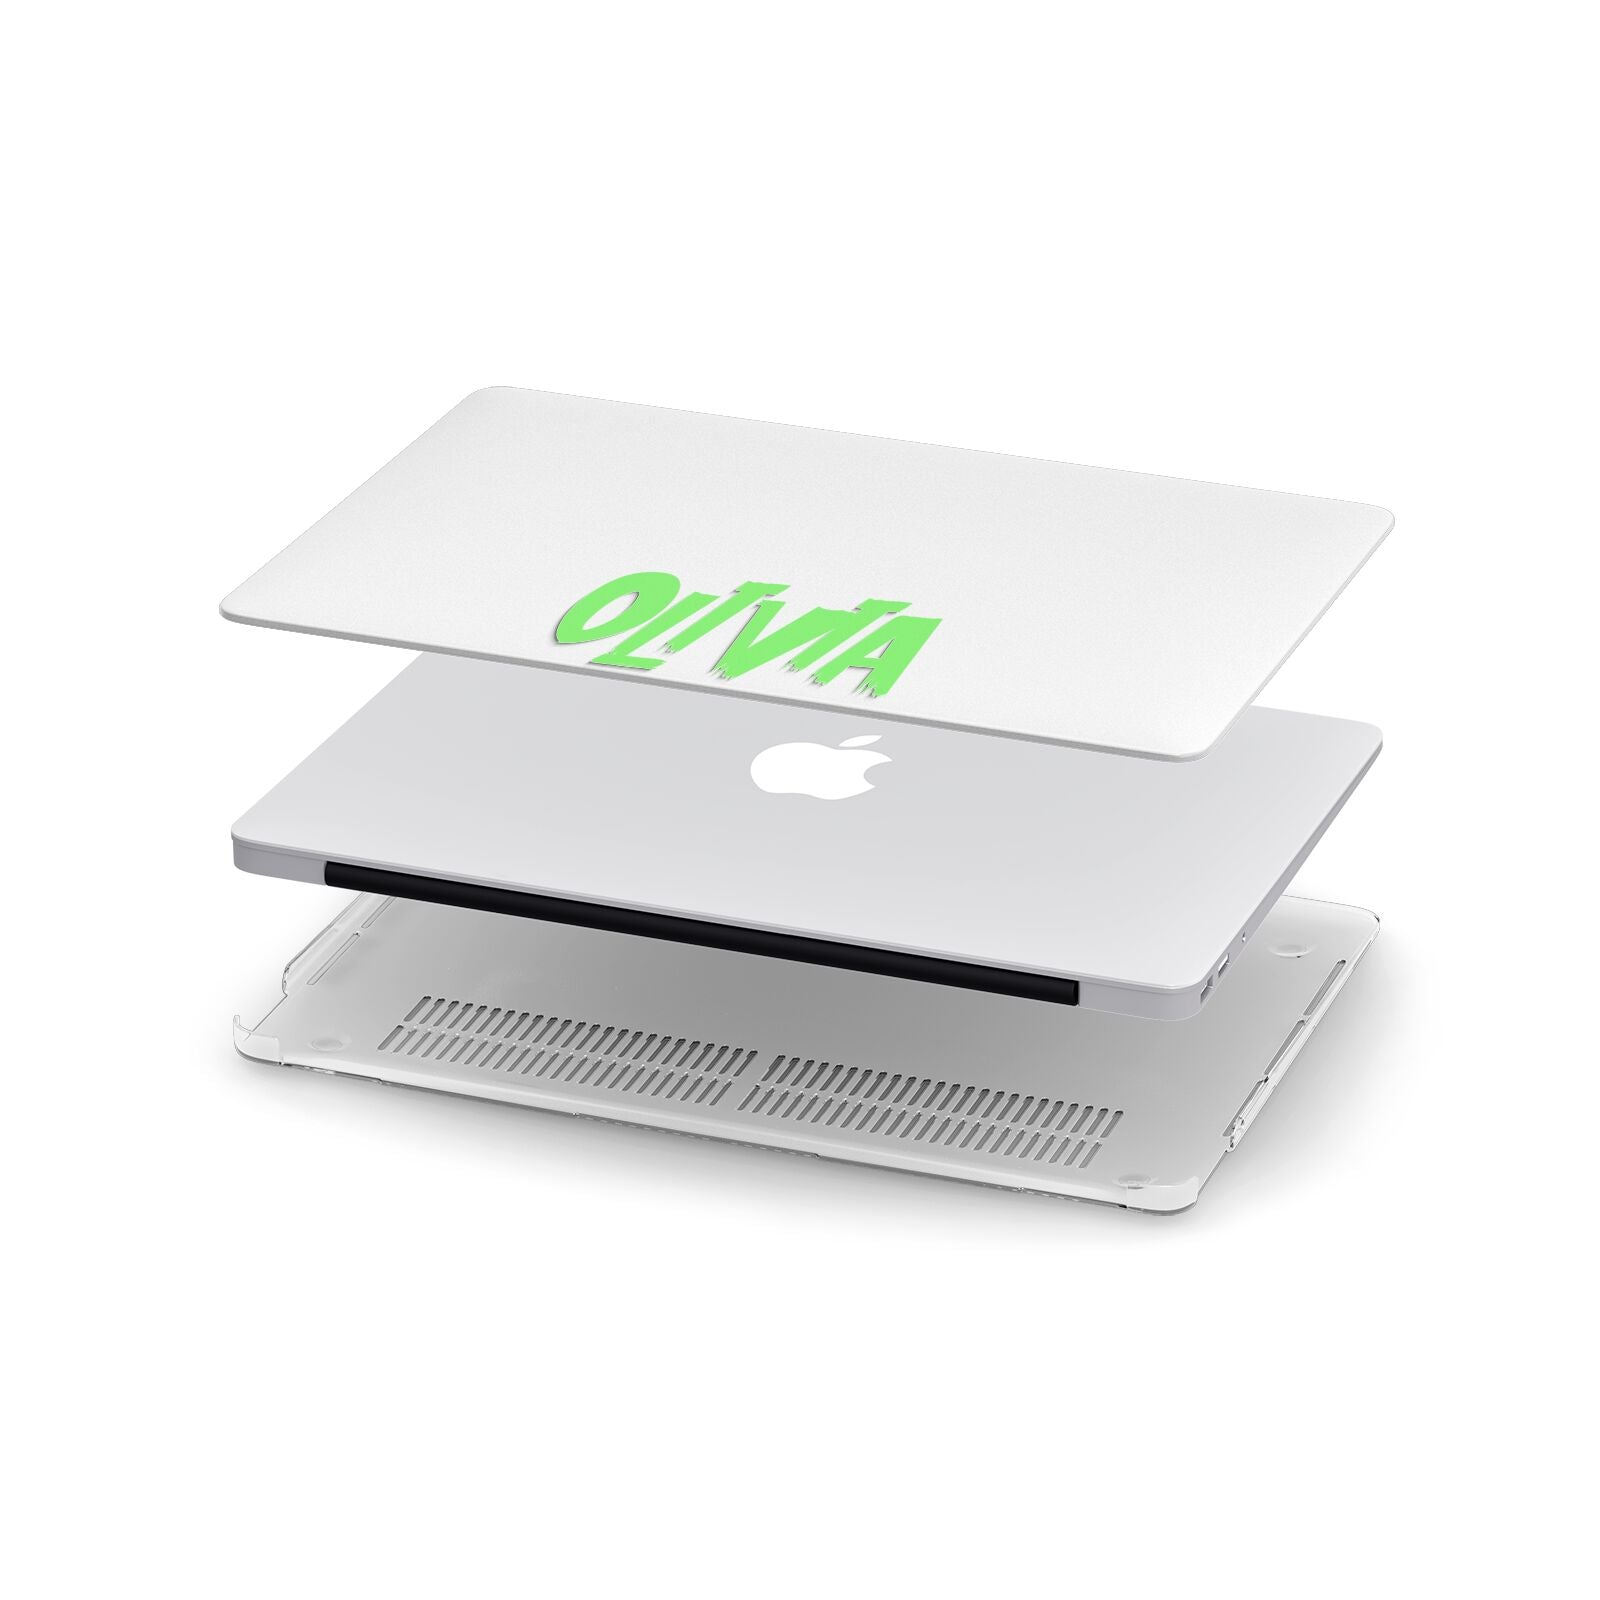 Personalised Name Green Spooky Apple MacBook Case in Detail